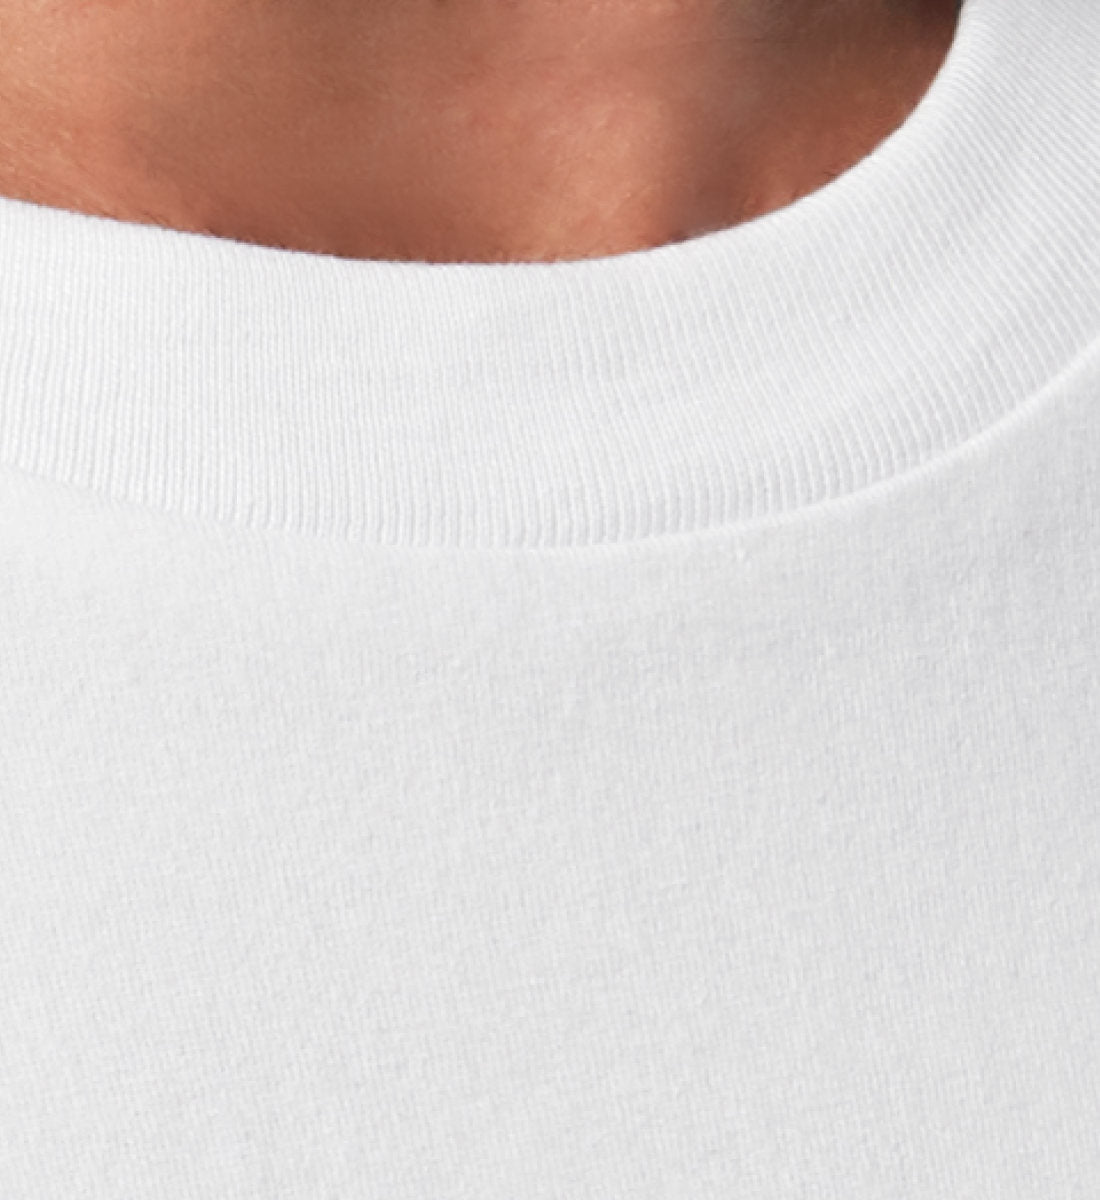 Weißes T-Shirt Unisex Relaxed Fit für Frauen und Männer bedruckt mit dem Design der frau gau Katzen Kollektion crazy cat chaos im Roger Rockawoo Clothing Onlineshop